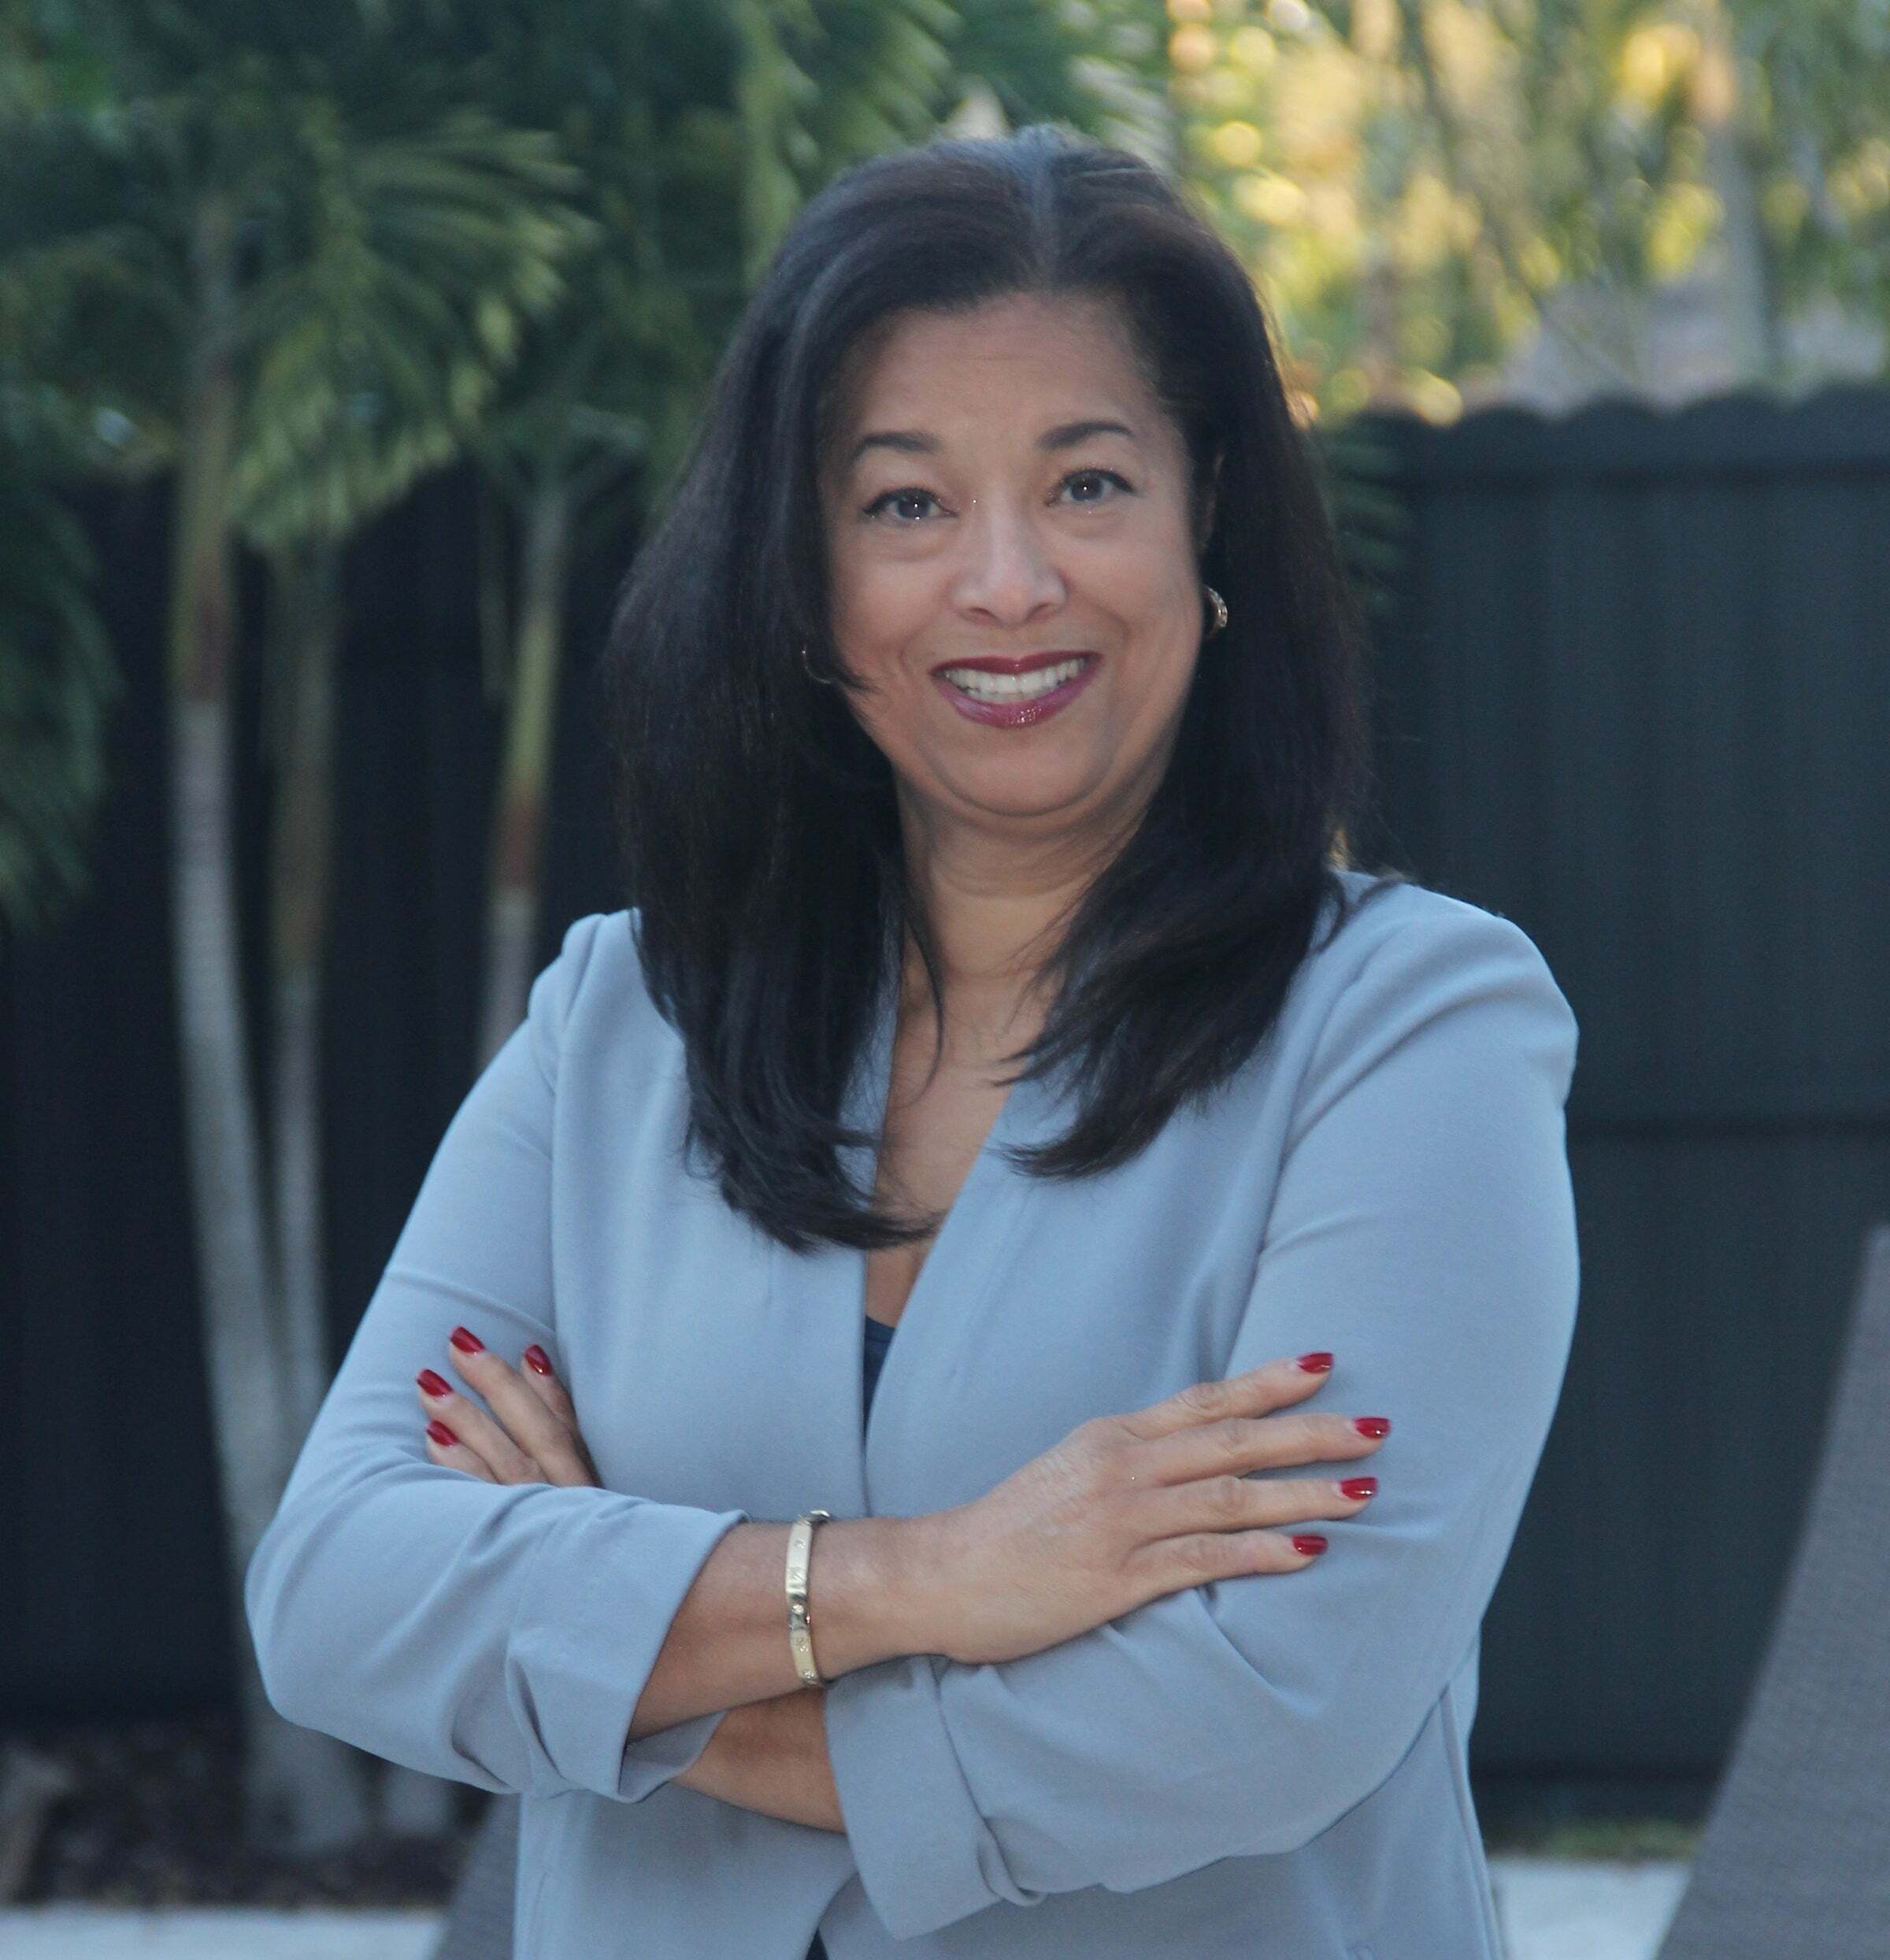 Marta La Marca, Real Estate Salesperson in Miami, World Connection